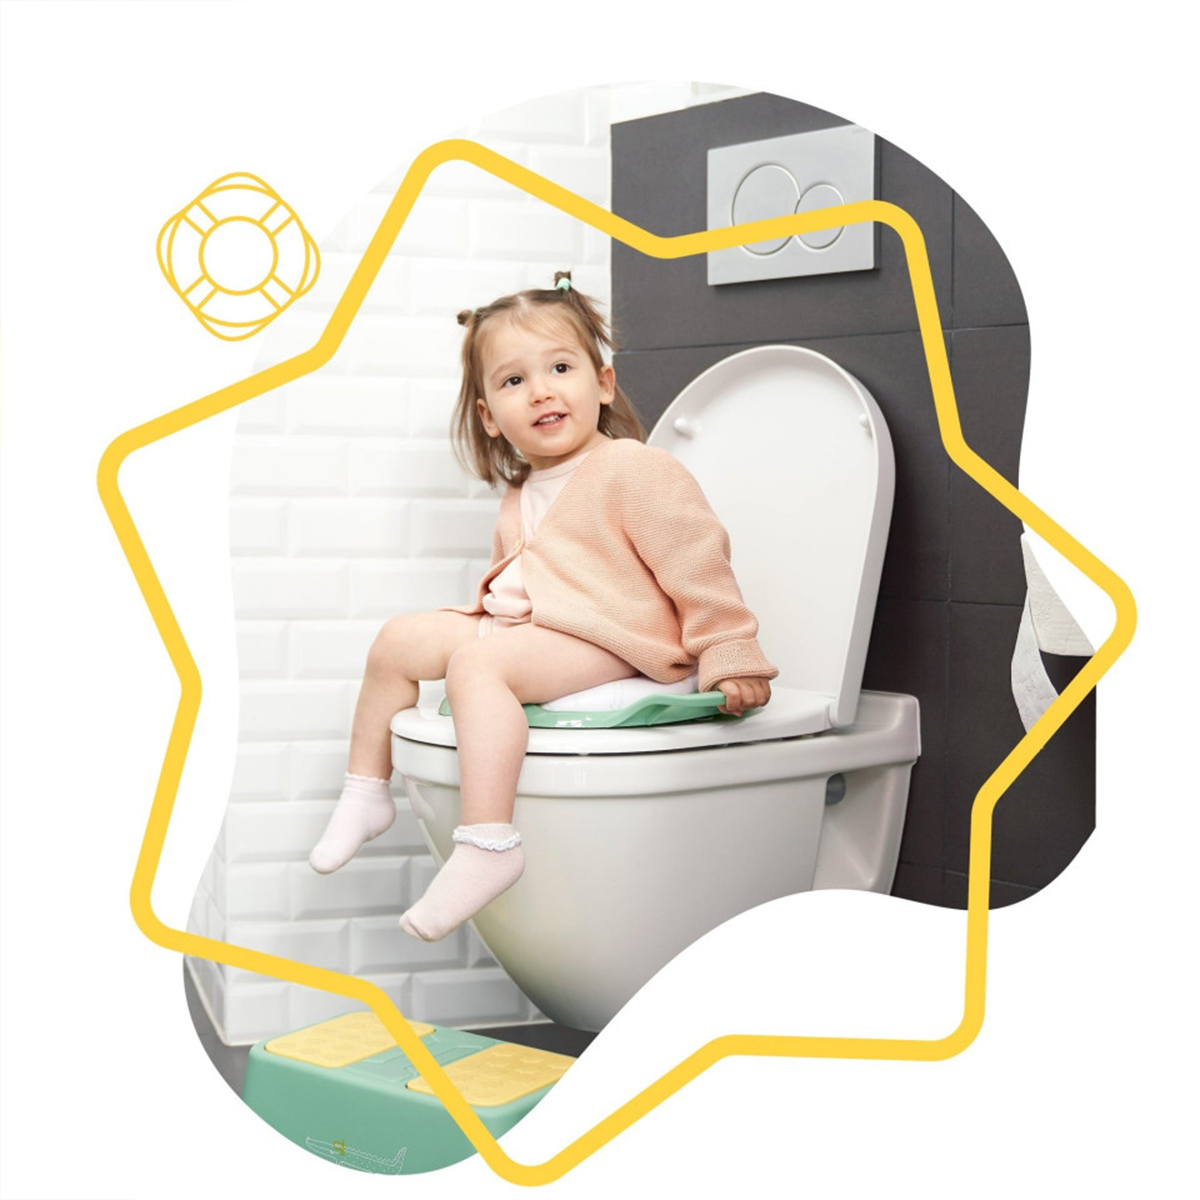 Reductoare - capace WC copii